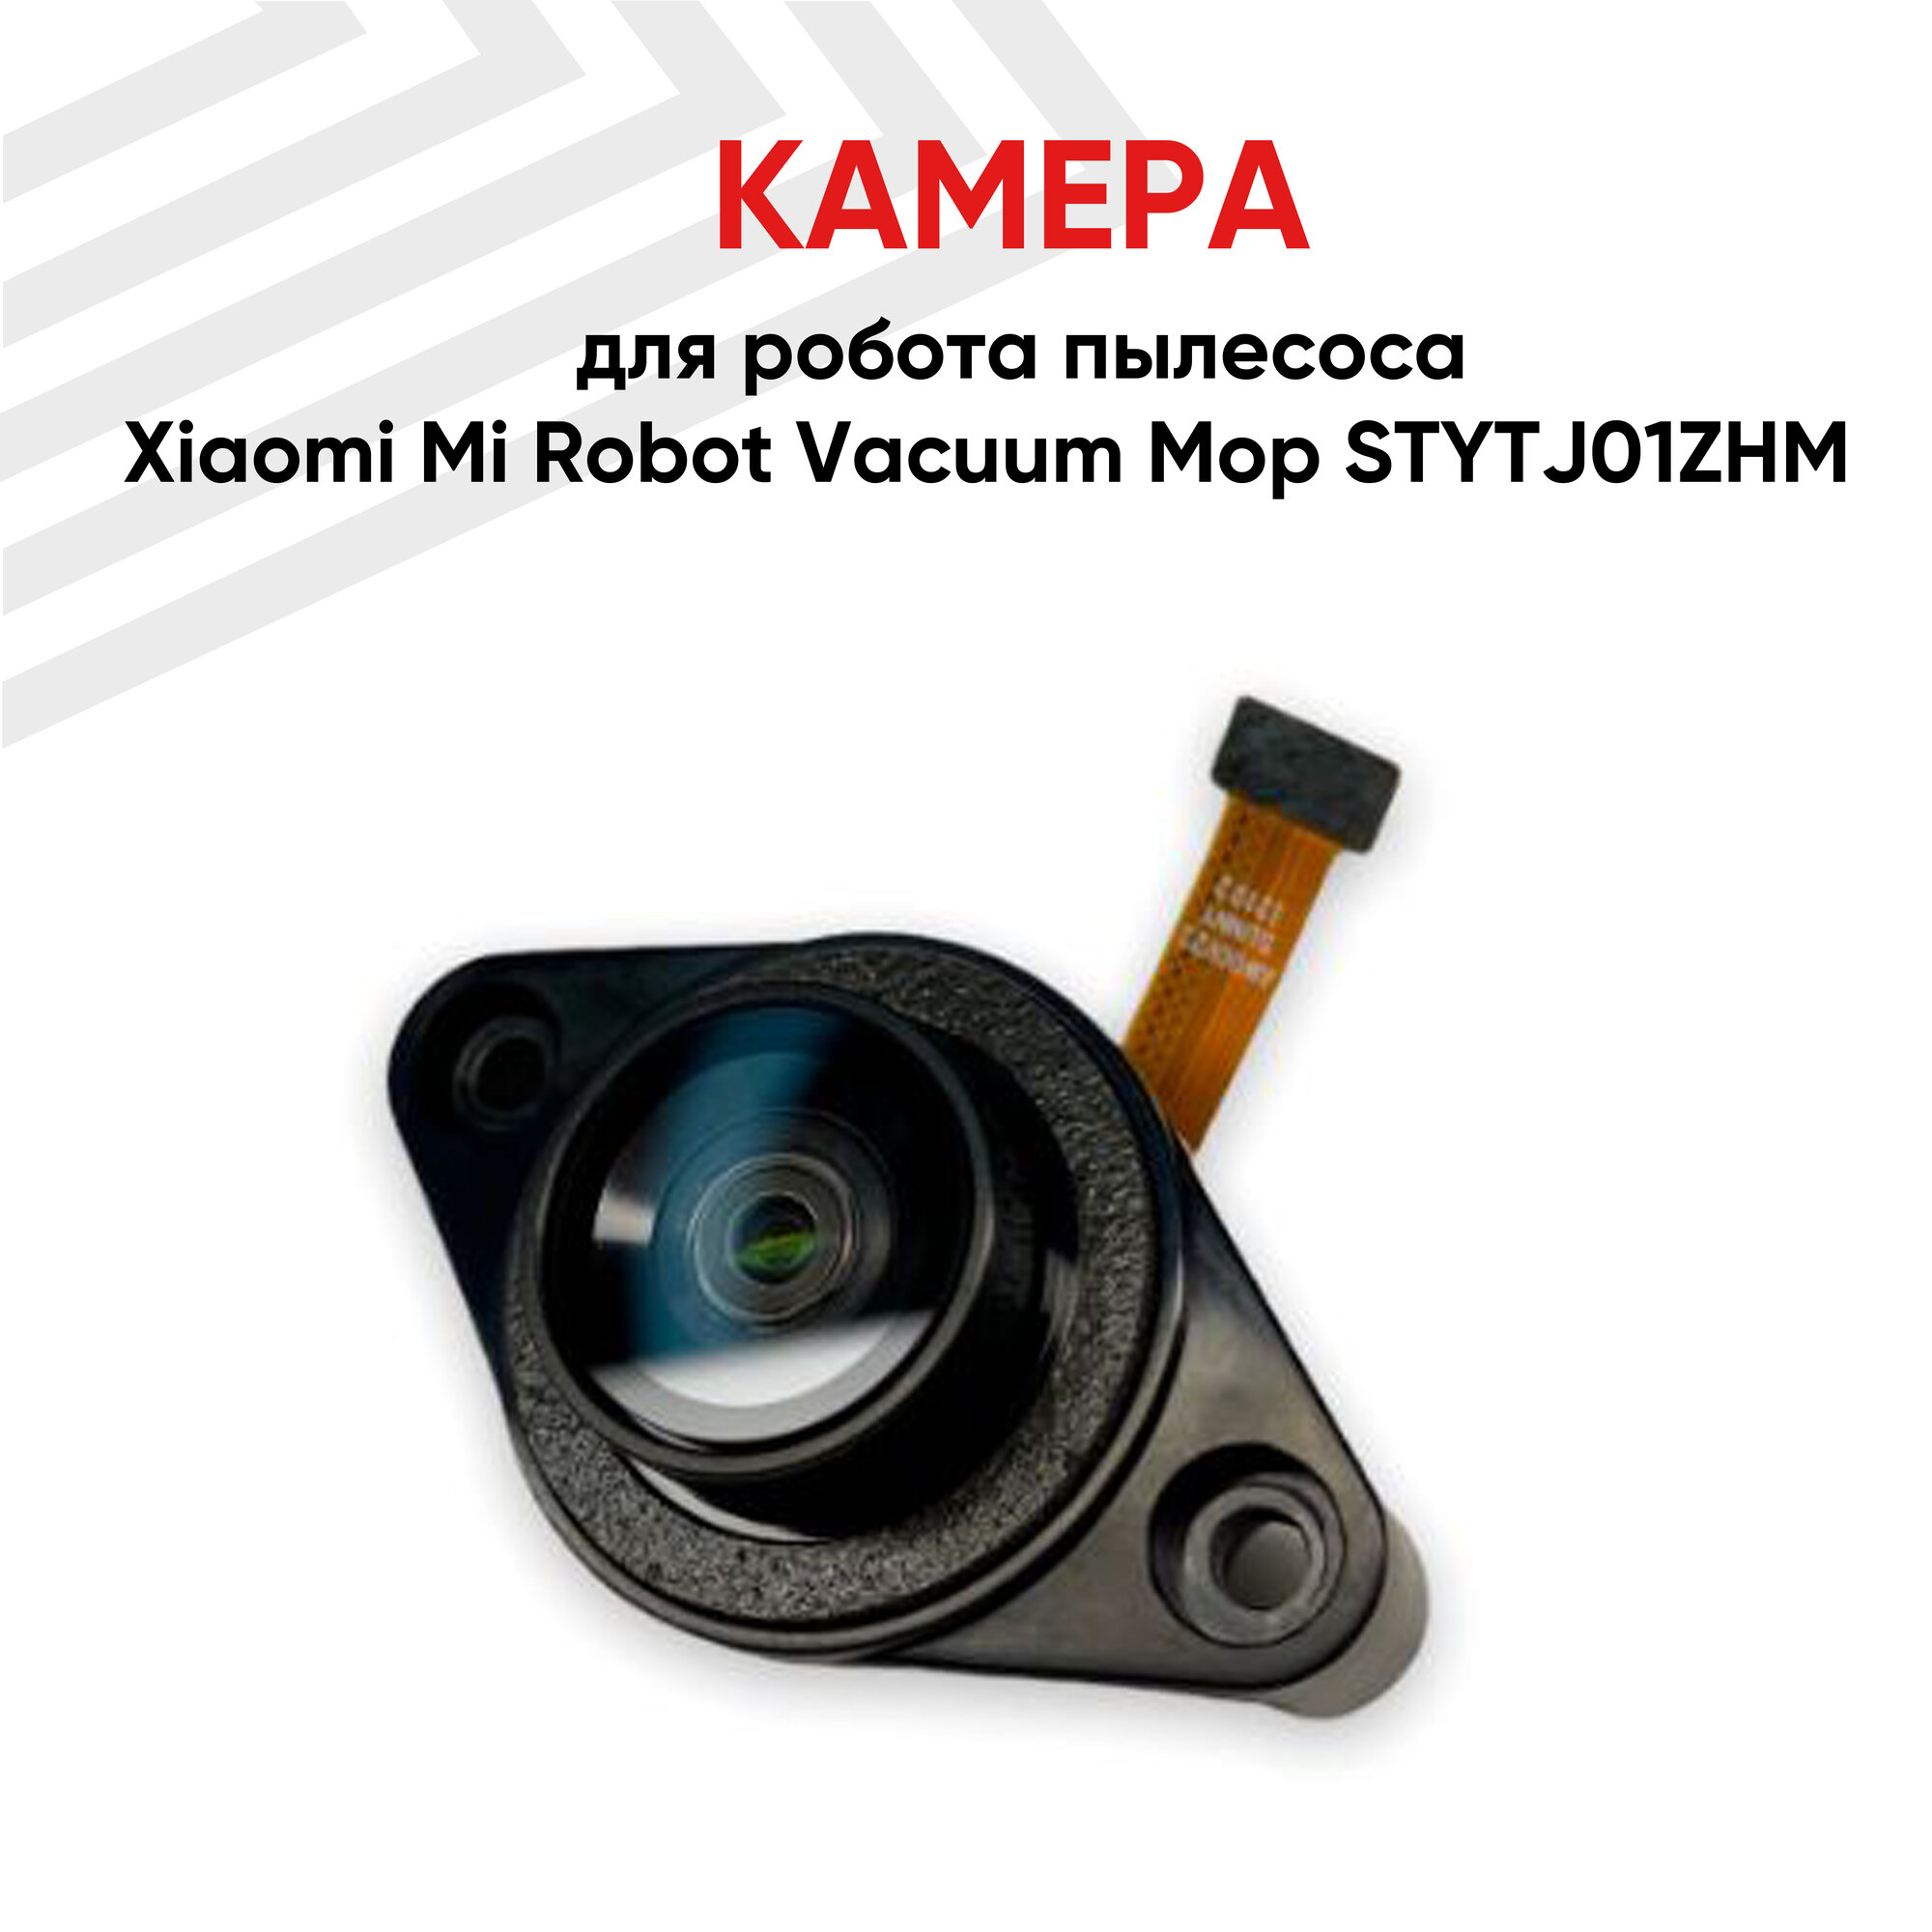 Камера для робота пылесоса Xiaomi Mi Robot Vacuum Mop STYTJ01ZHM